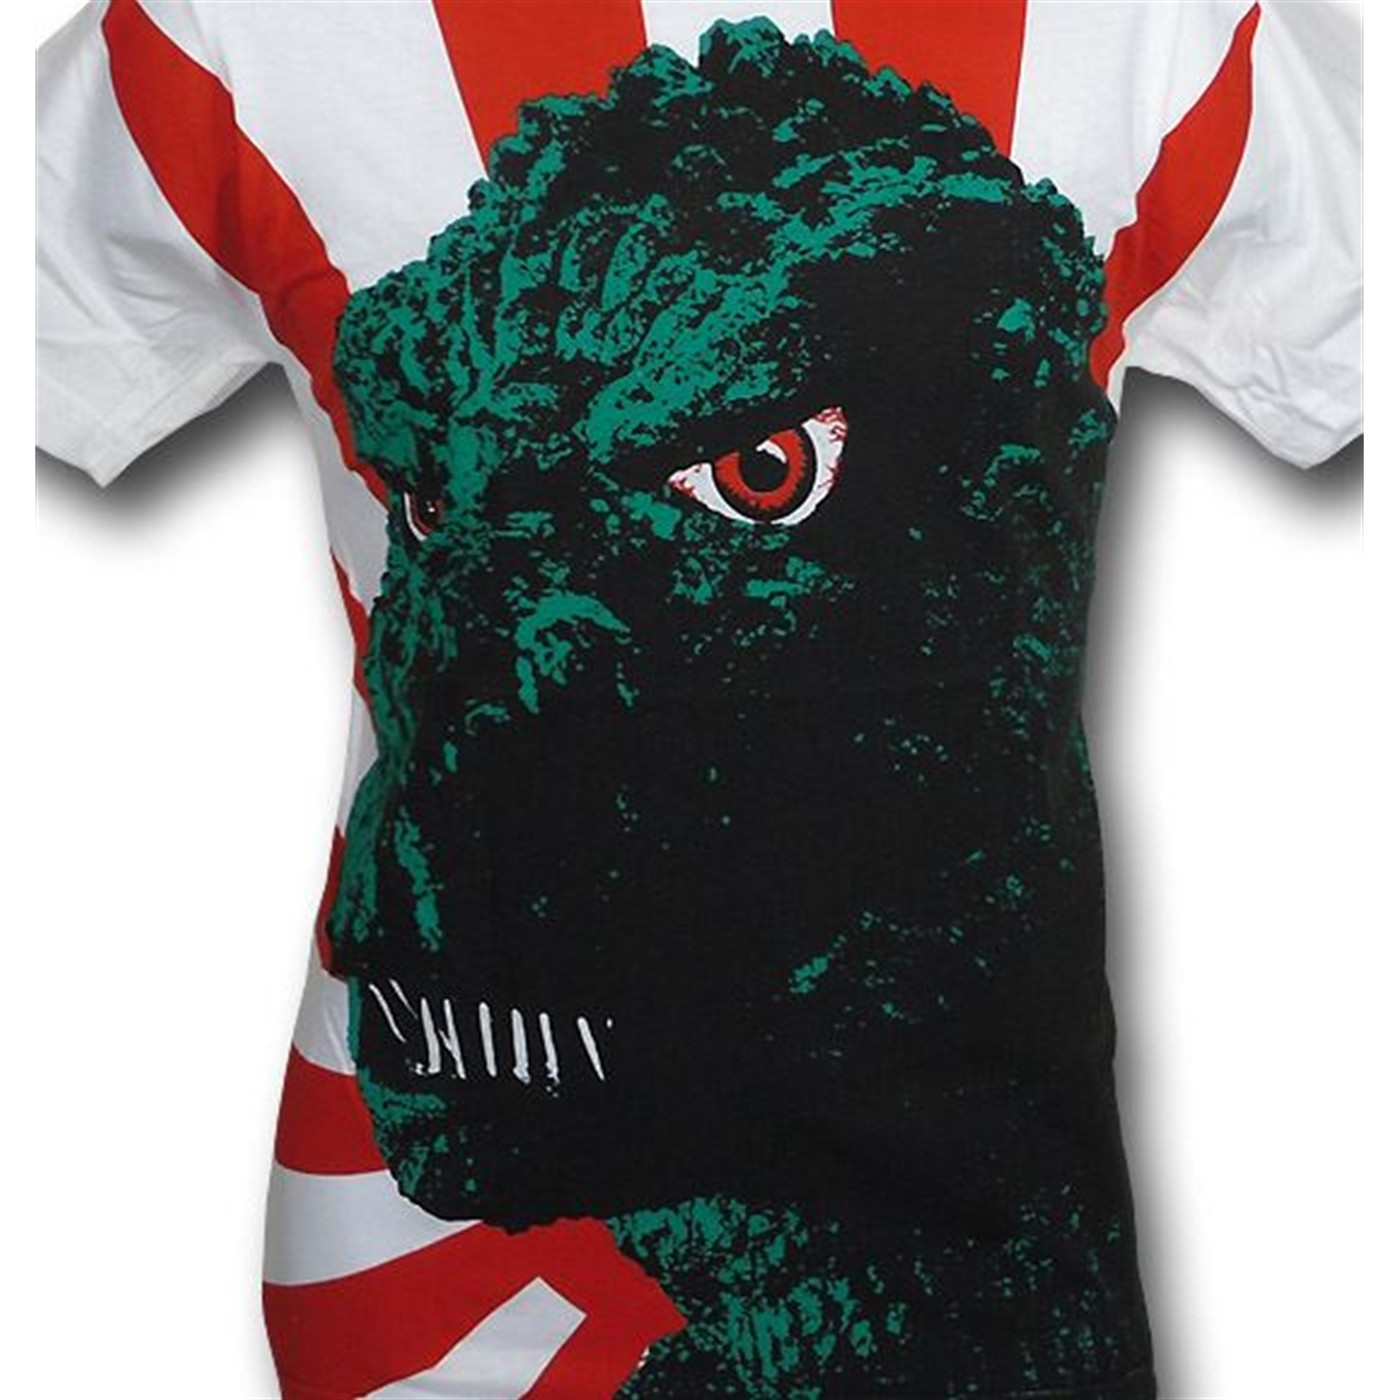 Godzilla Rising Sun Big Print (30 Single) T-Shirt